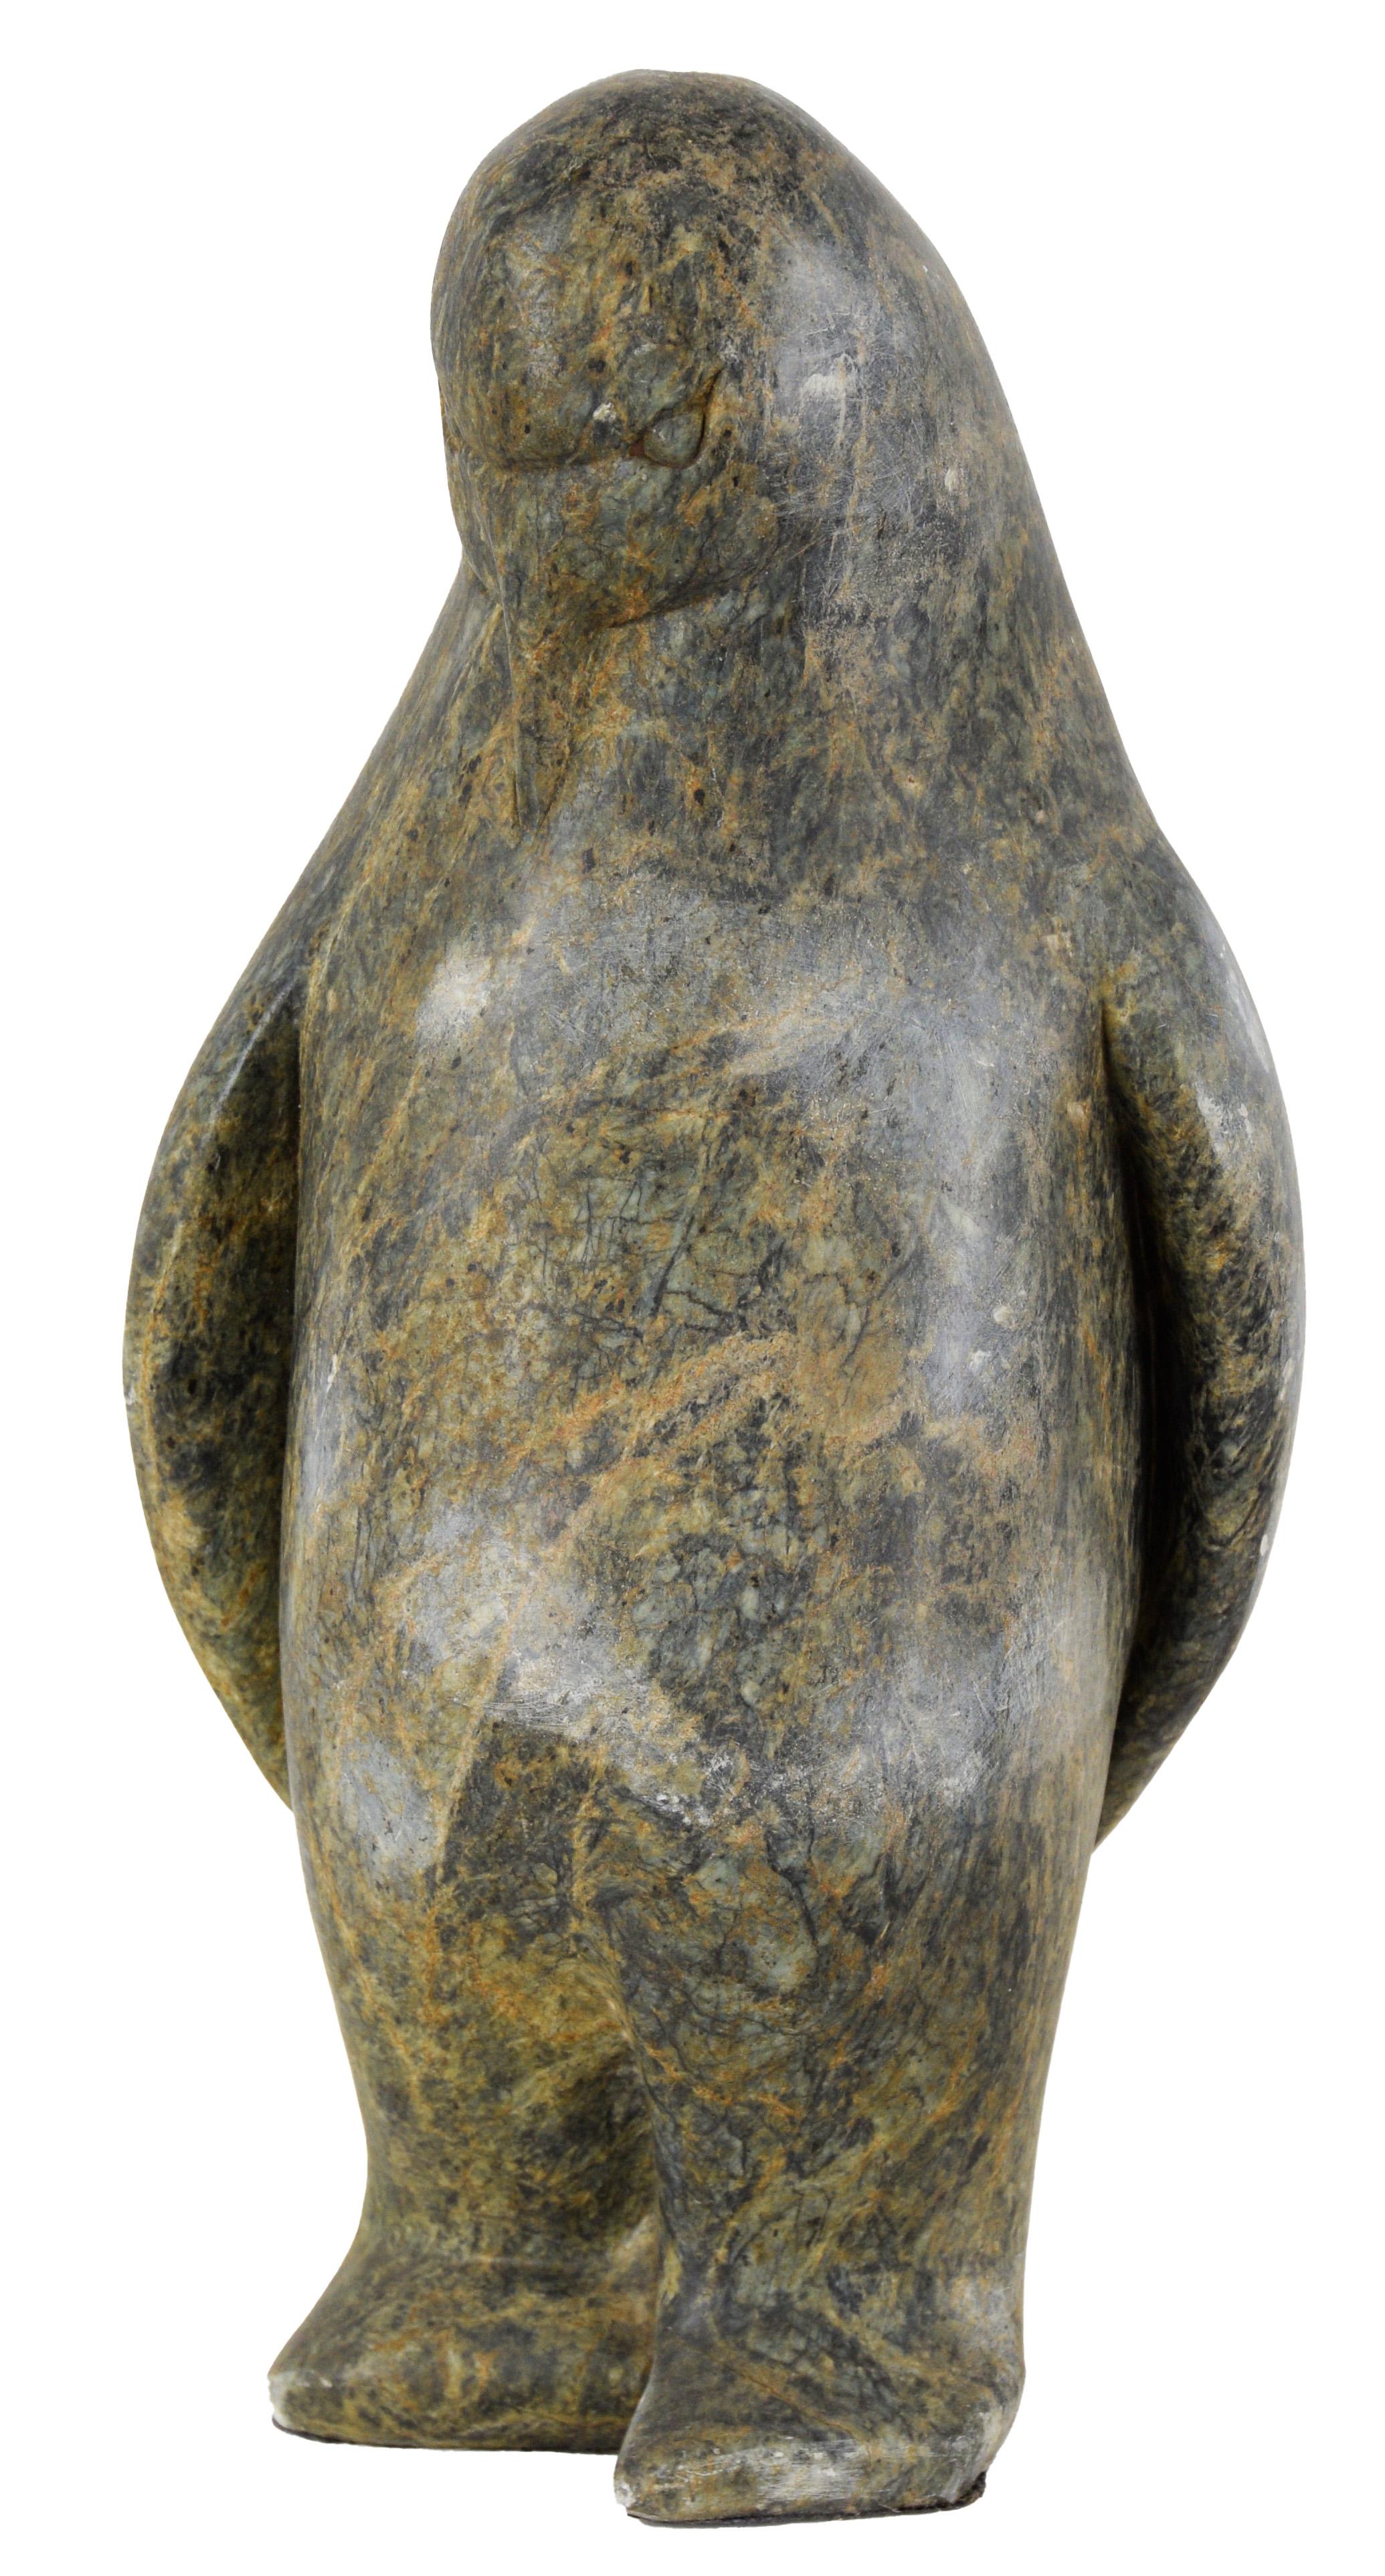 « Pingouin » - Sculpture sculptée à la main, art Eskimo de l'île de St. Lawrence

Sculpture dynamique en stéatite représentant un pingouin debout. La sculpture propose un style minimaliste et abstrait, sa stéatite (pierre à savon) présentant une